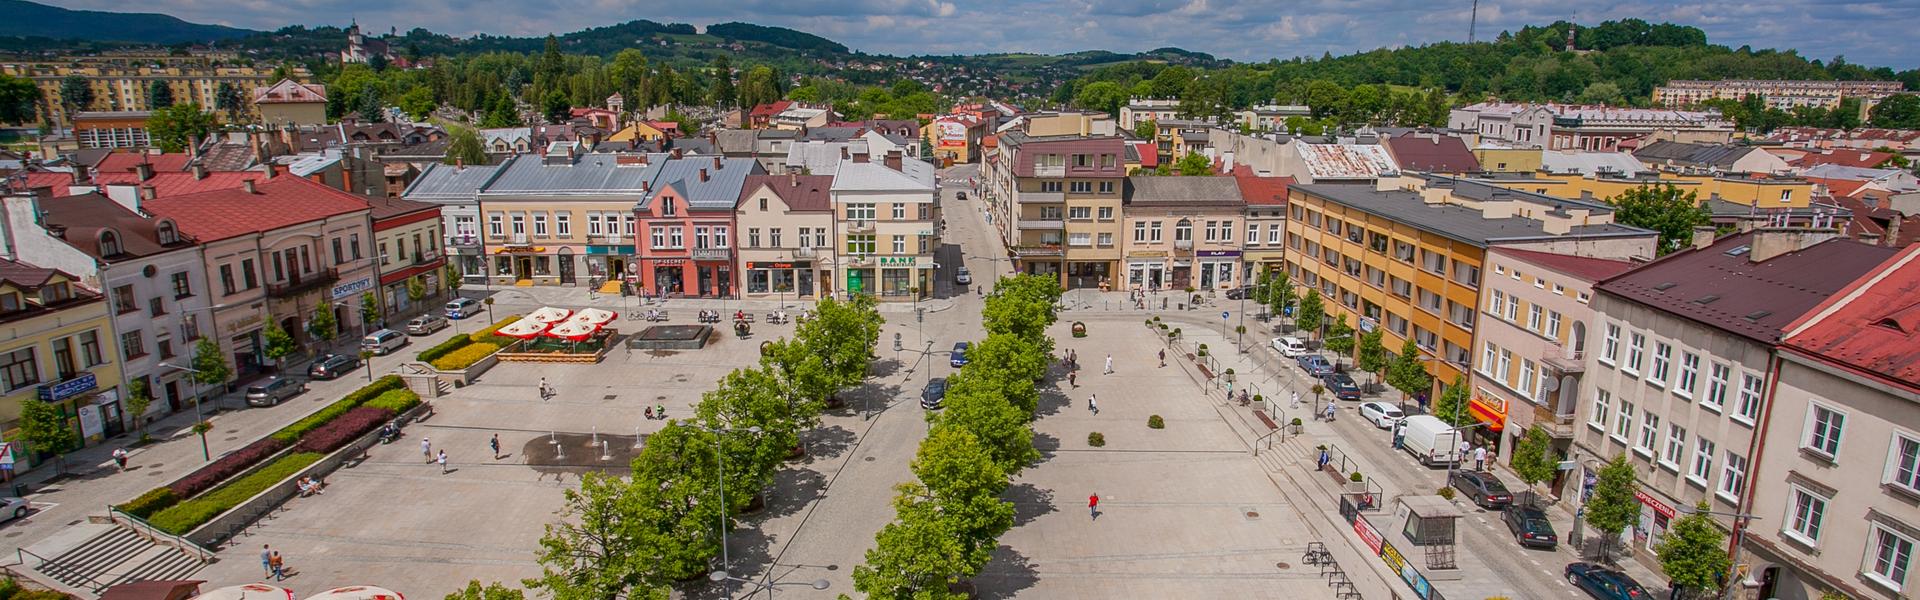 Marktplatz von Gorlice, Blick auf Stadthäuser, Platz und Baumalleen aus der Vogelperspektive.